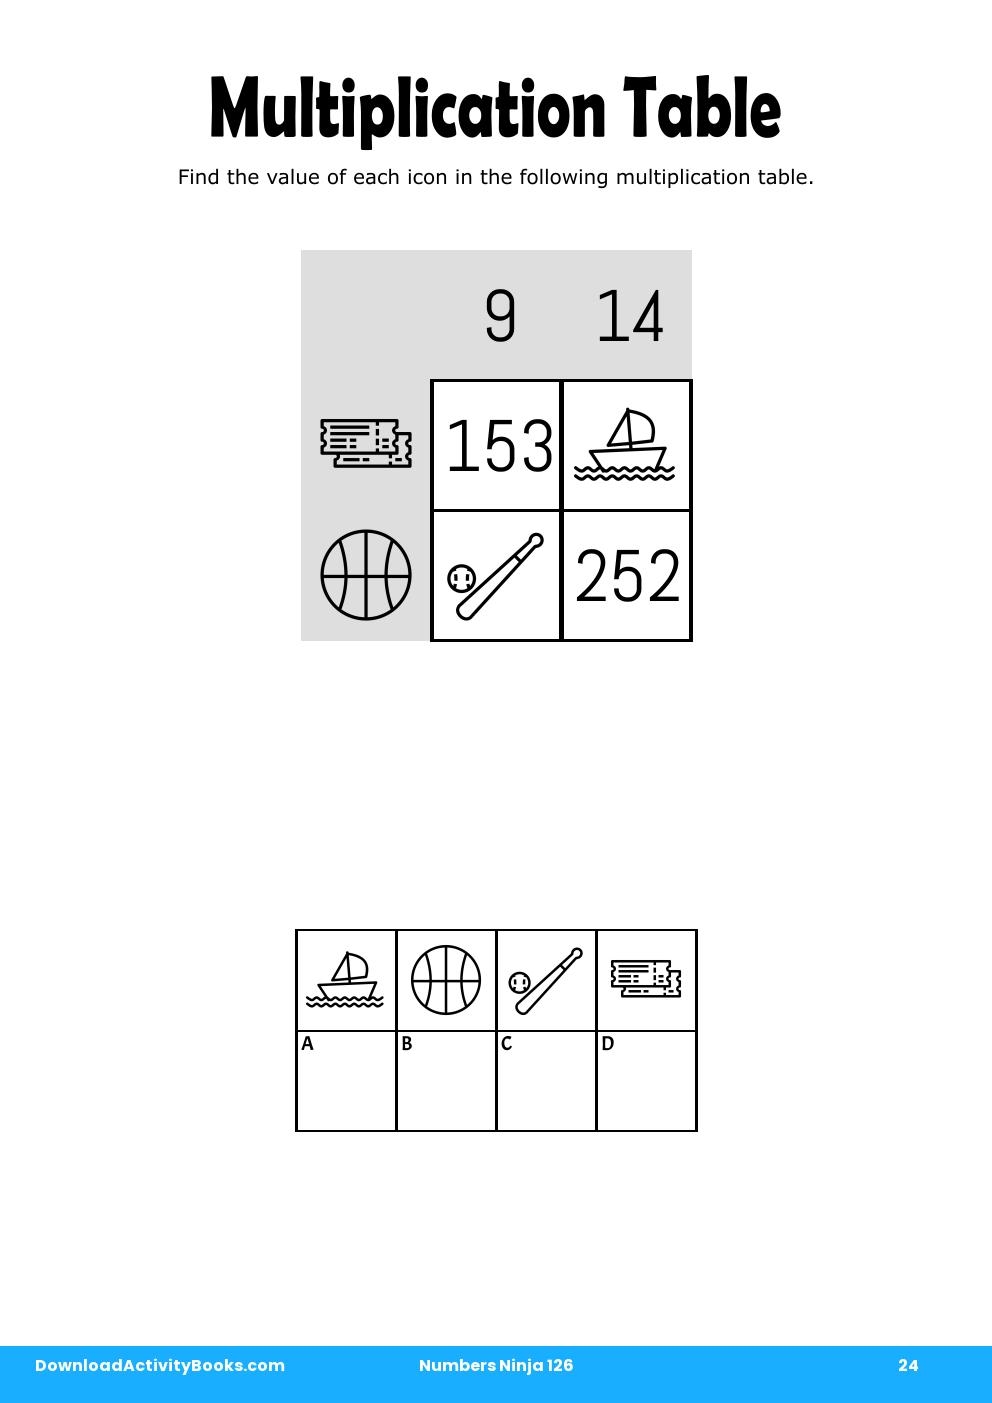 Multiplication Table in Numbers Ninja 126